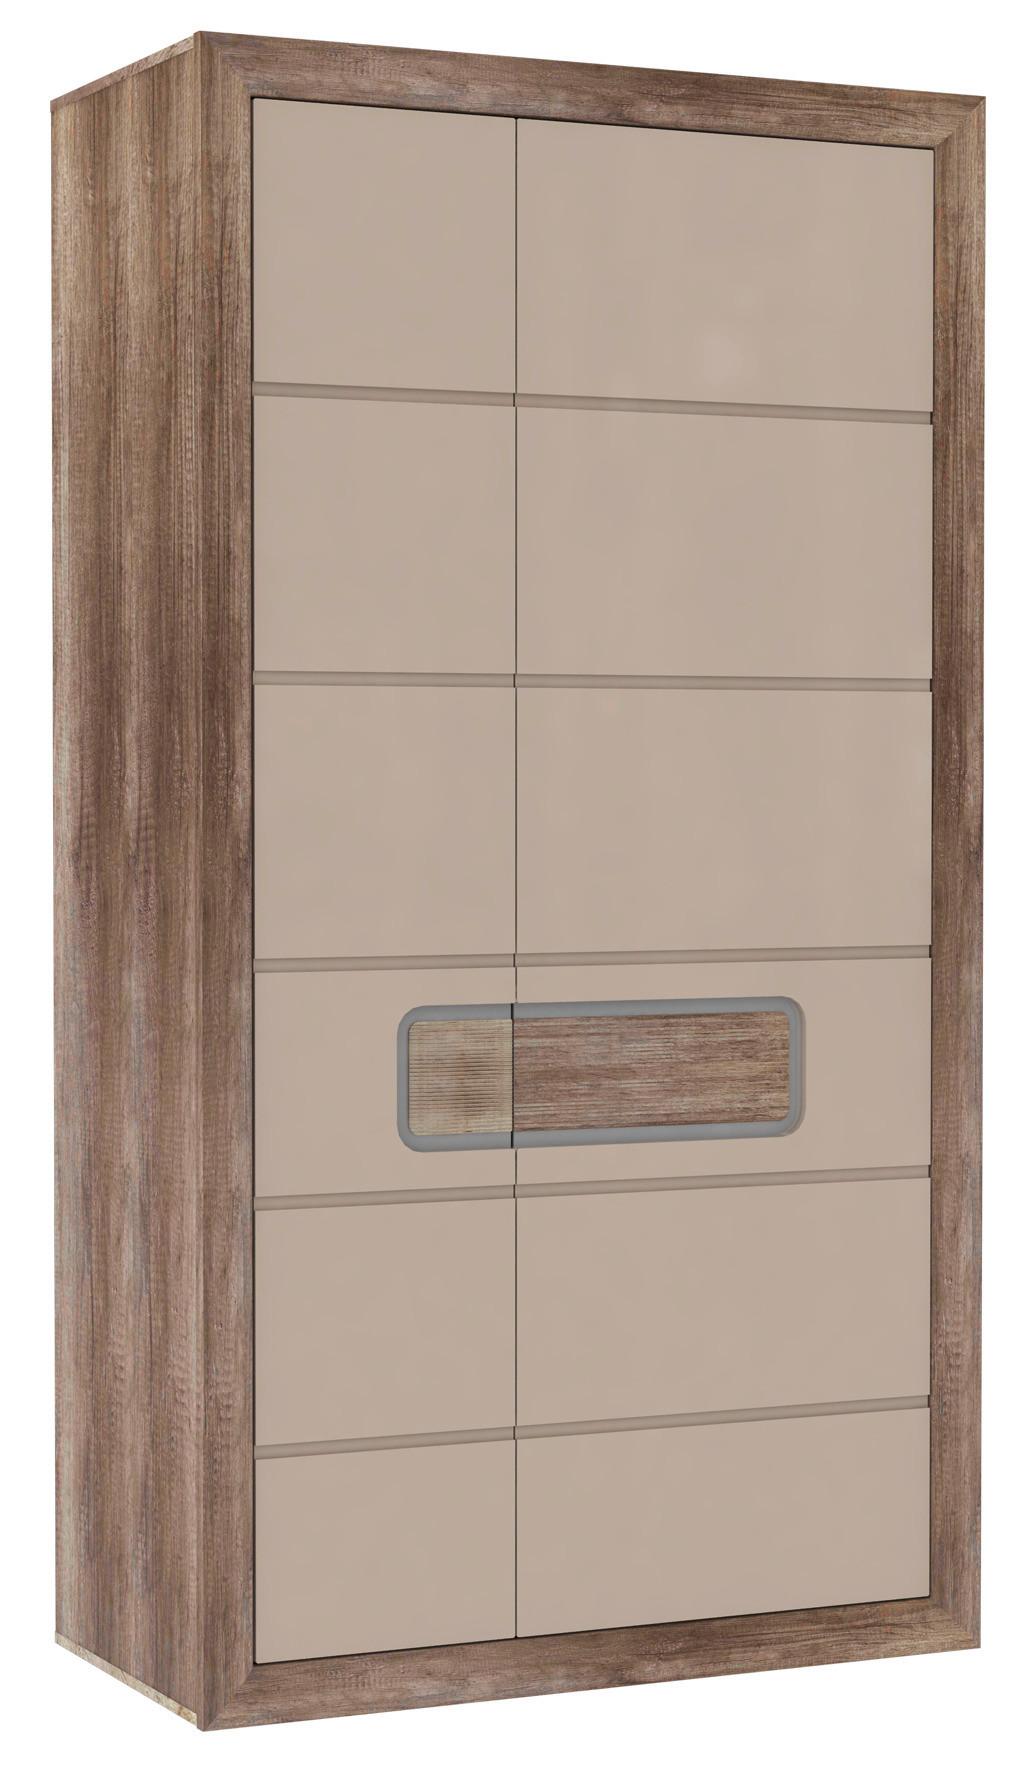 Dulap de haine Tiziano - bej/culoare lemn stejar, Modern, plastic/sticlă (108,8/203,4/54,2cm)